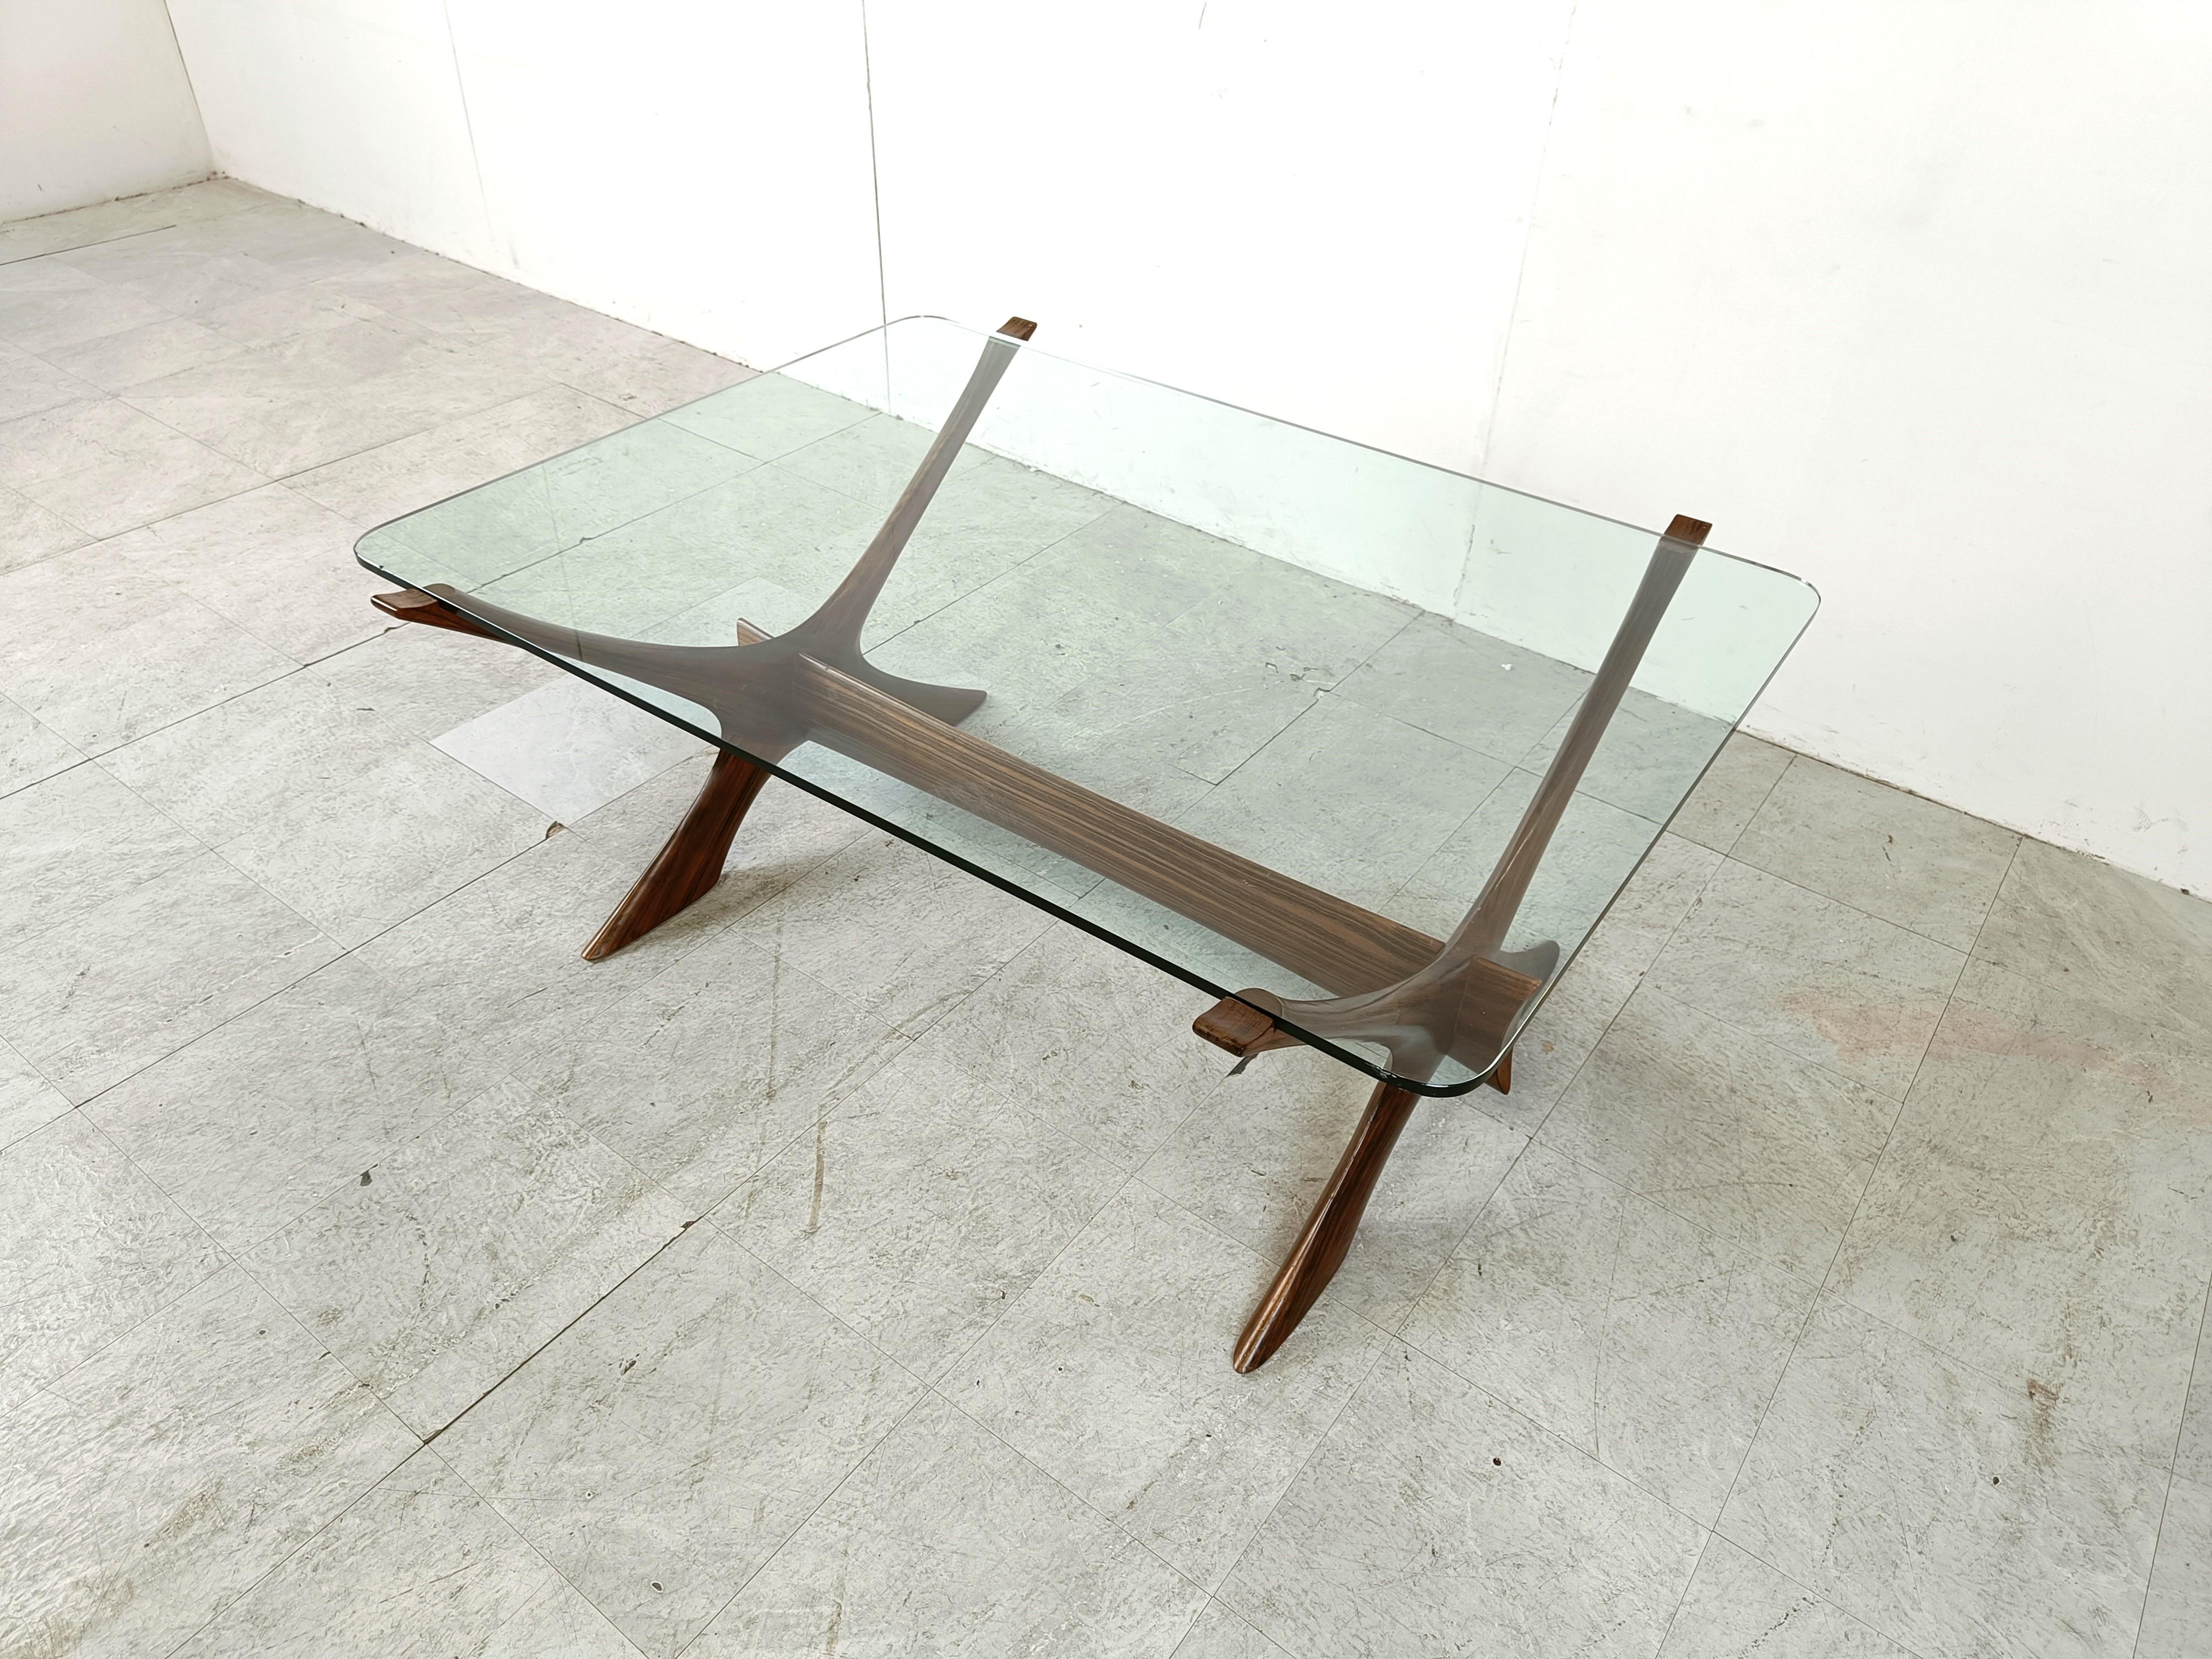 Spectaculaire table basse du milieu du siècle conçue par  Fredrik Schriever-Abeln pour la société suédoise Örebro Glasfabrik.

La table est magnifique sous tous les angles et se caractérise par un cadre en teck de belle facture et un plateau en